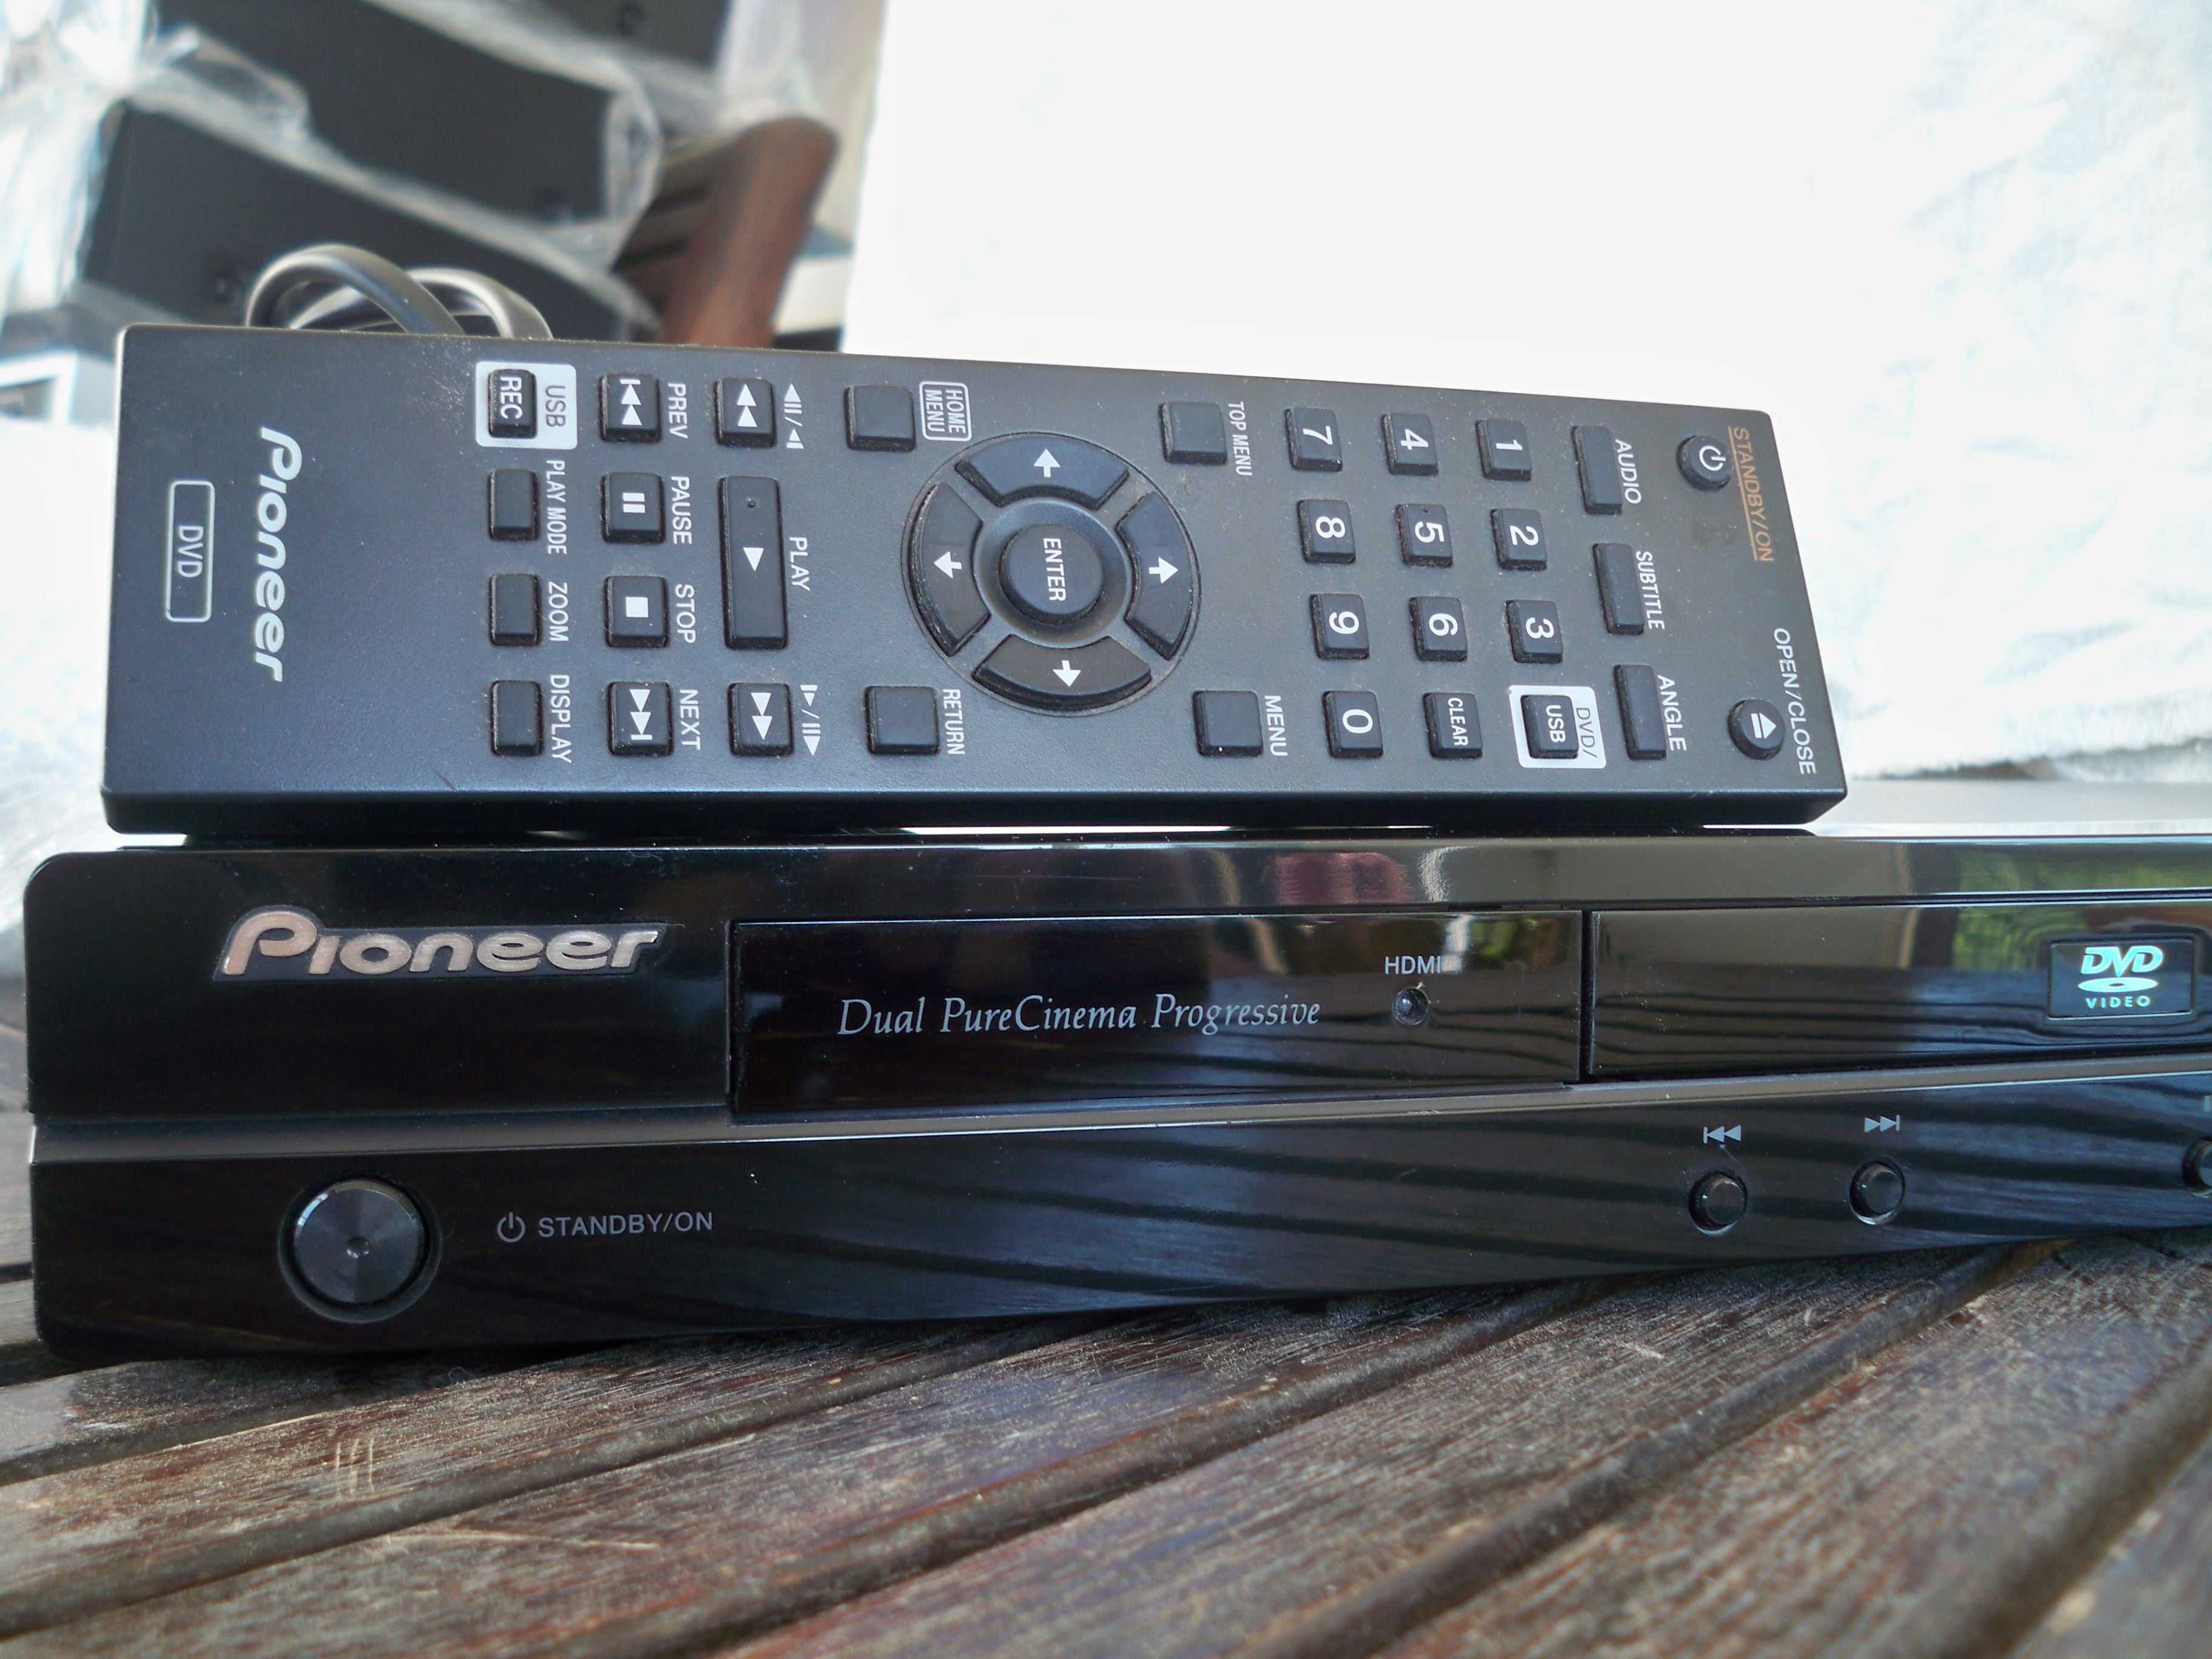 odtwarzacz DVD Pioneer DV-420 pilot USB + kabel hdmi, tworzy pliki MP3